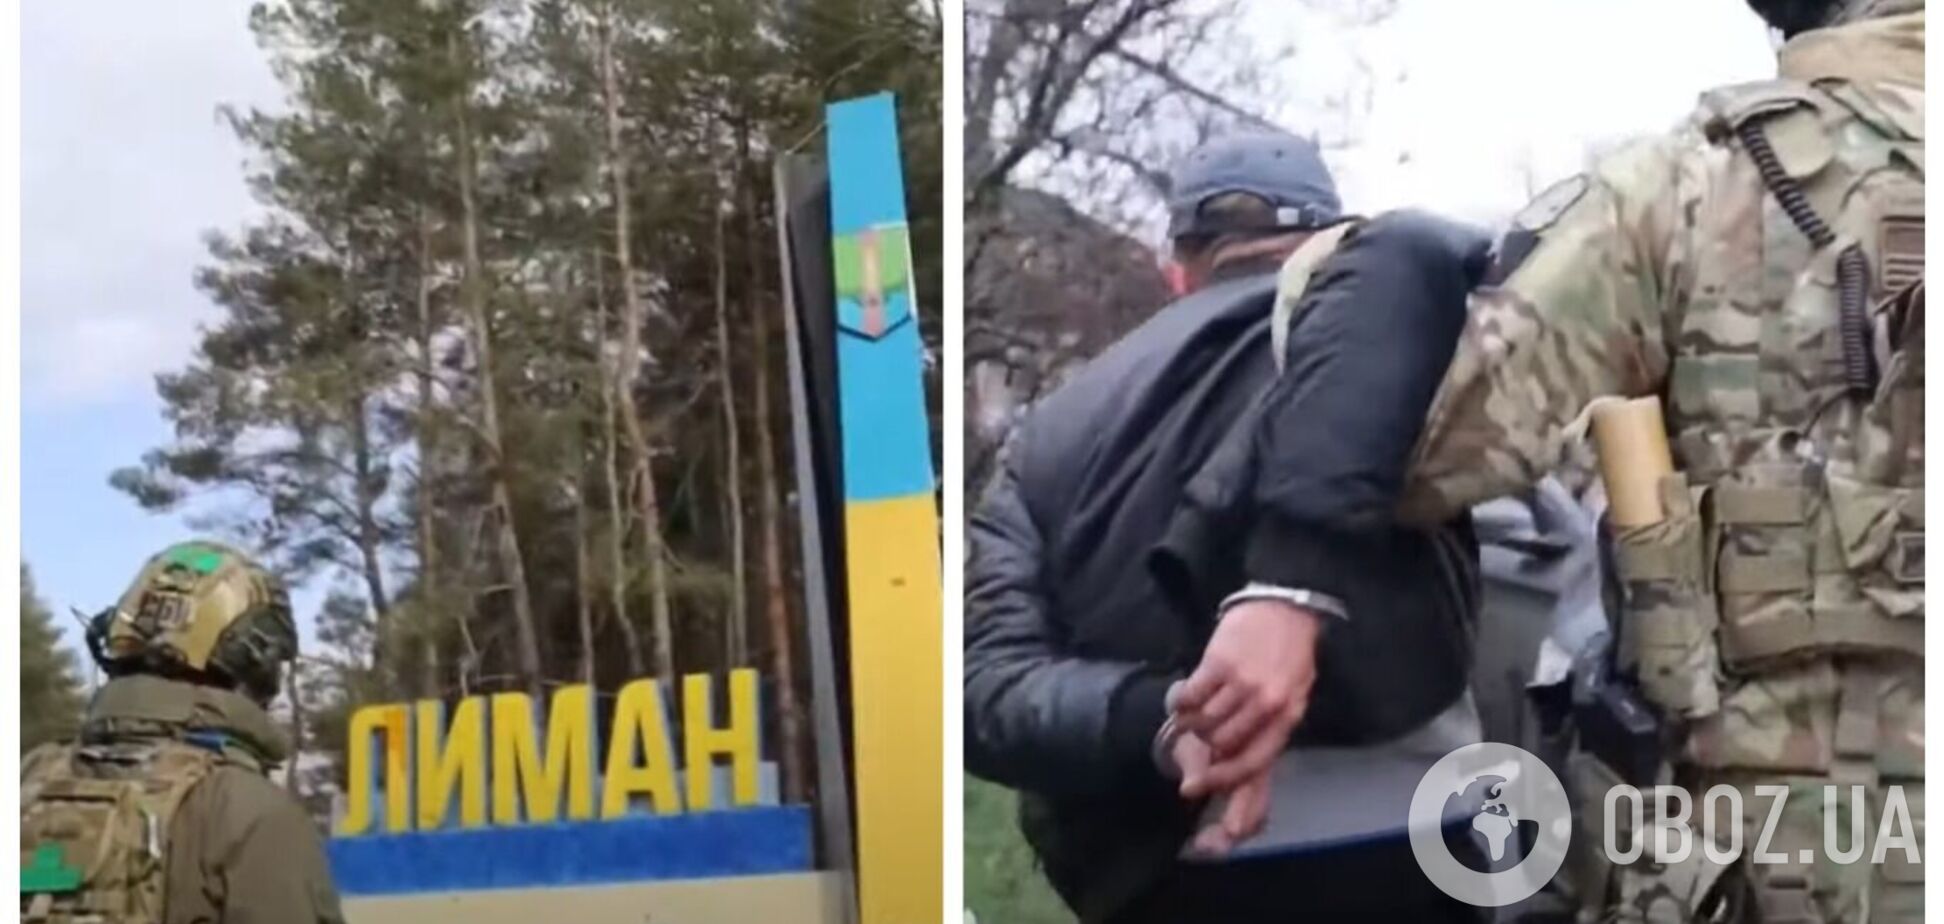 Добровольно пошли на сотрудничество с врагом: СБУ разоблачила группу вражеских приспешников в Лимане Донецкой области. Видео